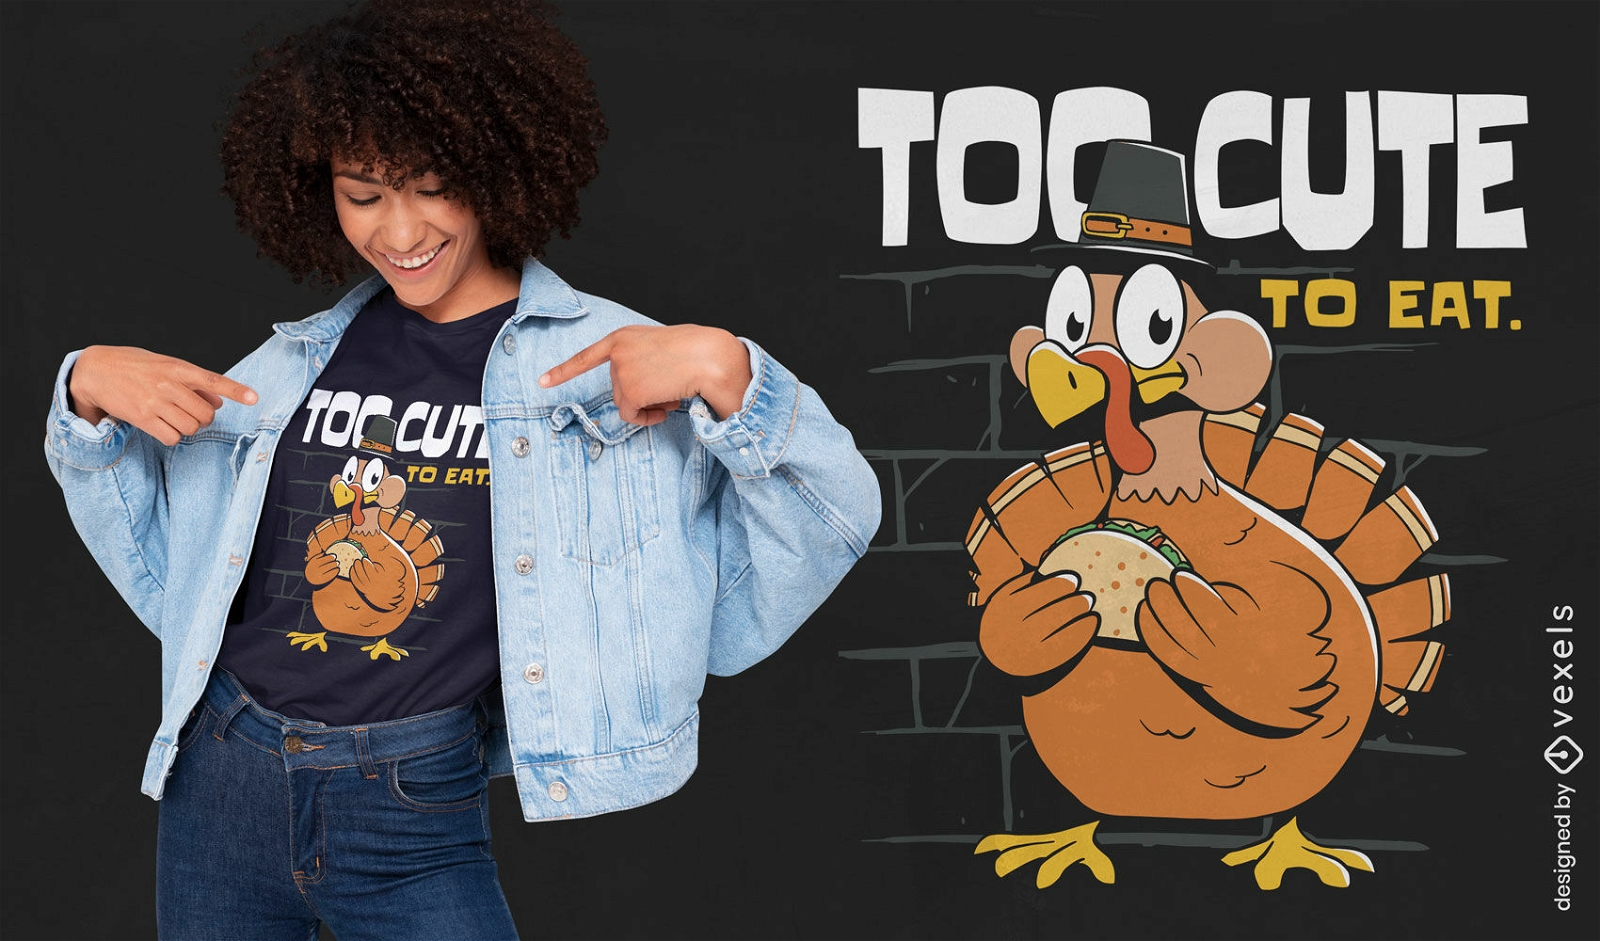 Thanksgiving cartoon turkey quote t-shirt design